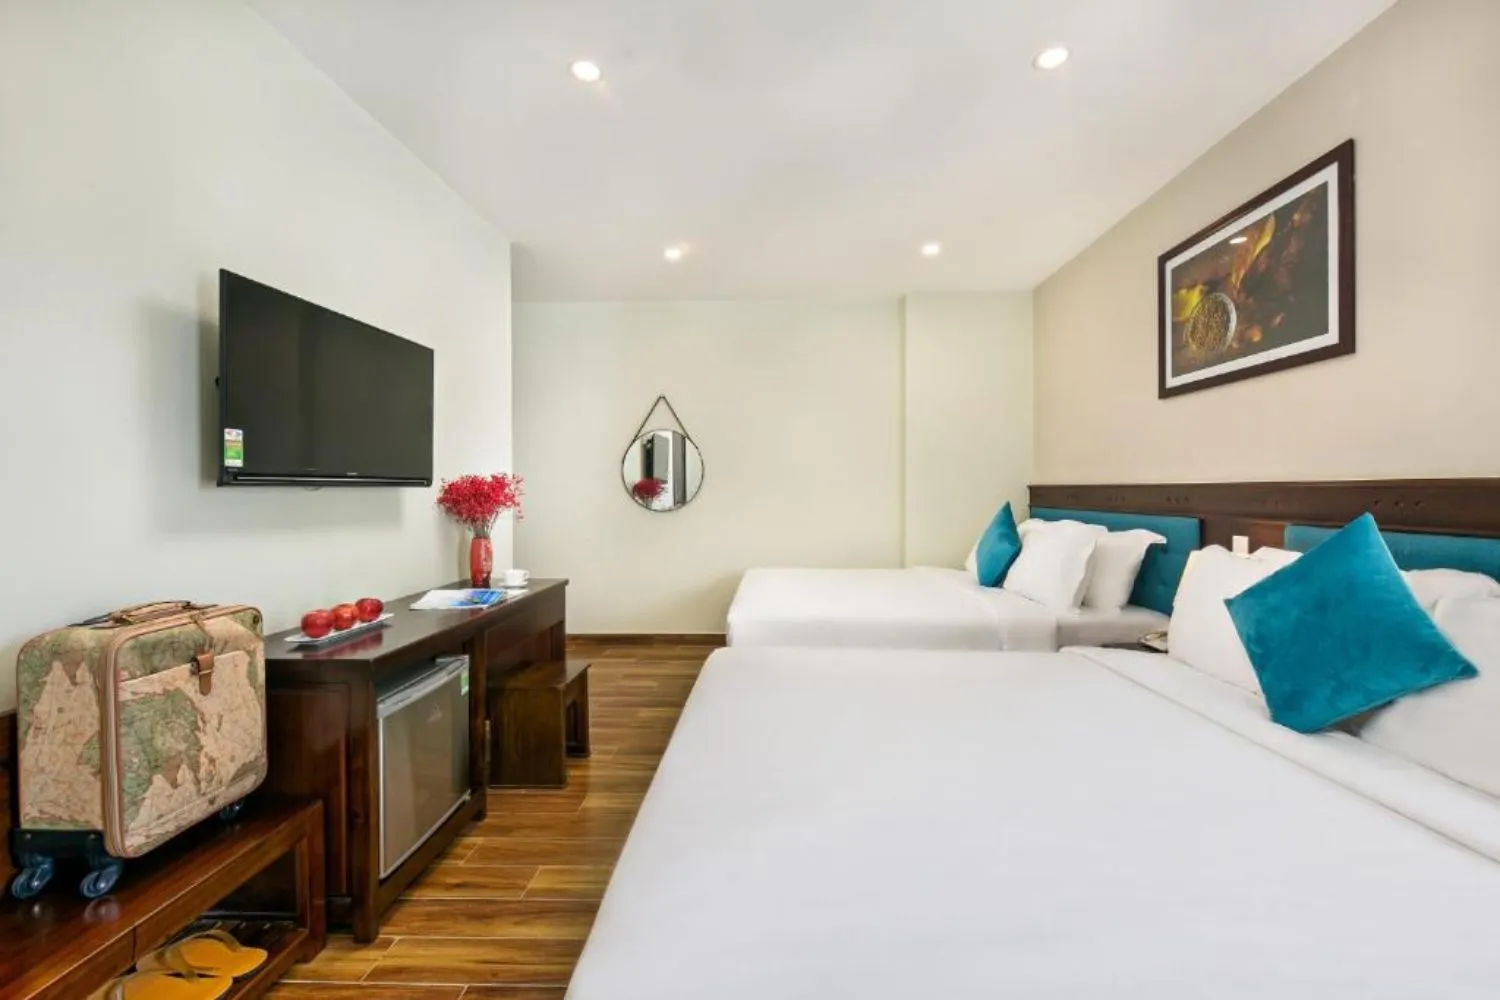 Celina Hotel And Apartment trải nghiệm du lịch biển tại Đà Nẵng